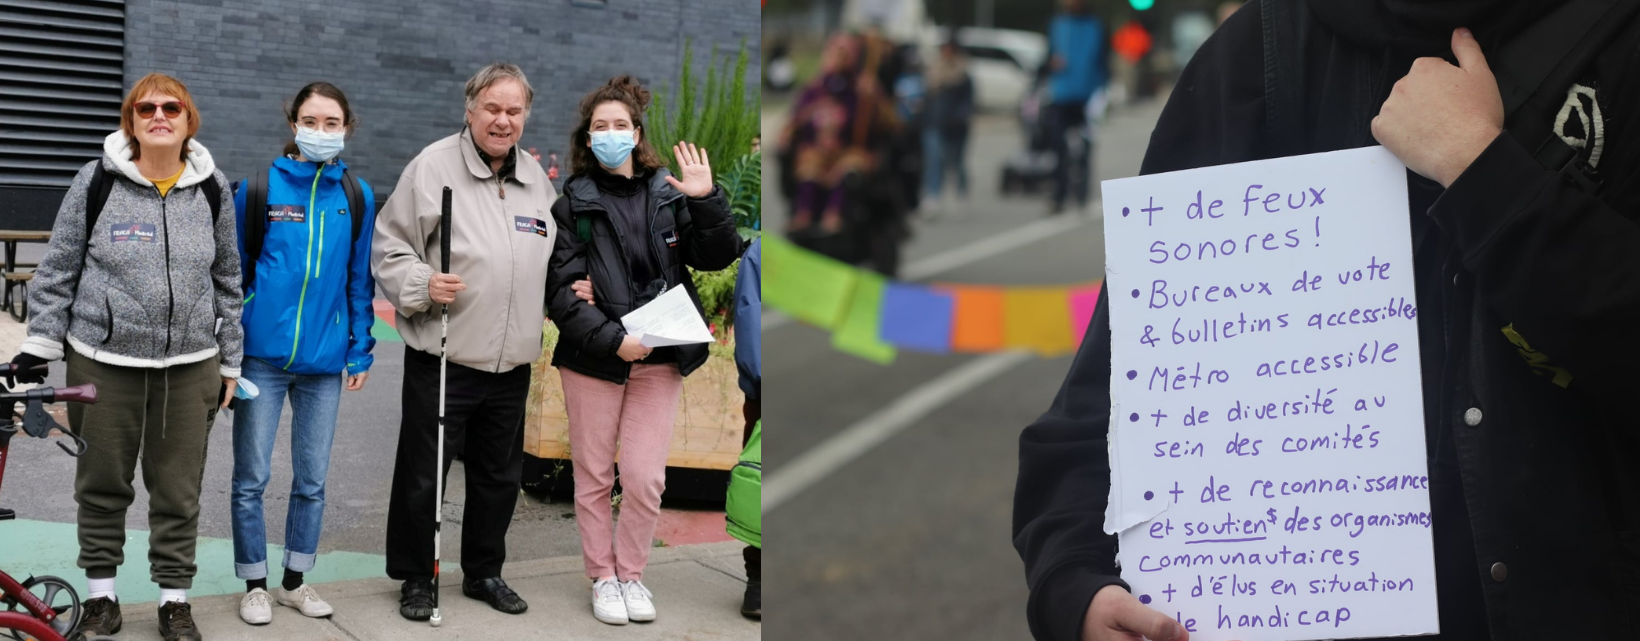 Photos: Des membres du RUTA et de l'équipe de travail sourient lors d'une action de mobilisation. La 2e photos montrent quelqu'un qui tient une pancarte sur laquelle il y a des revendications.